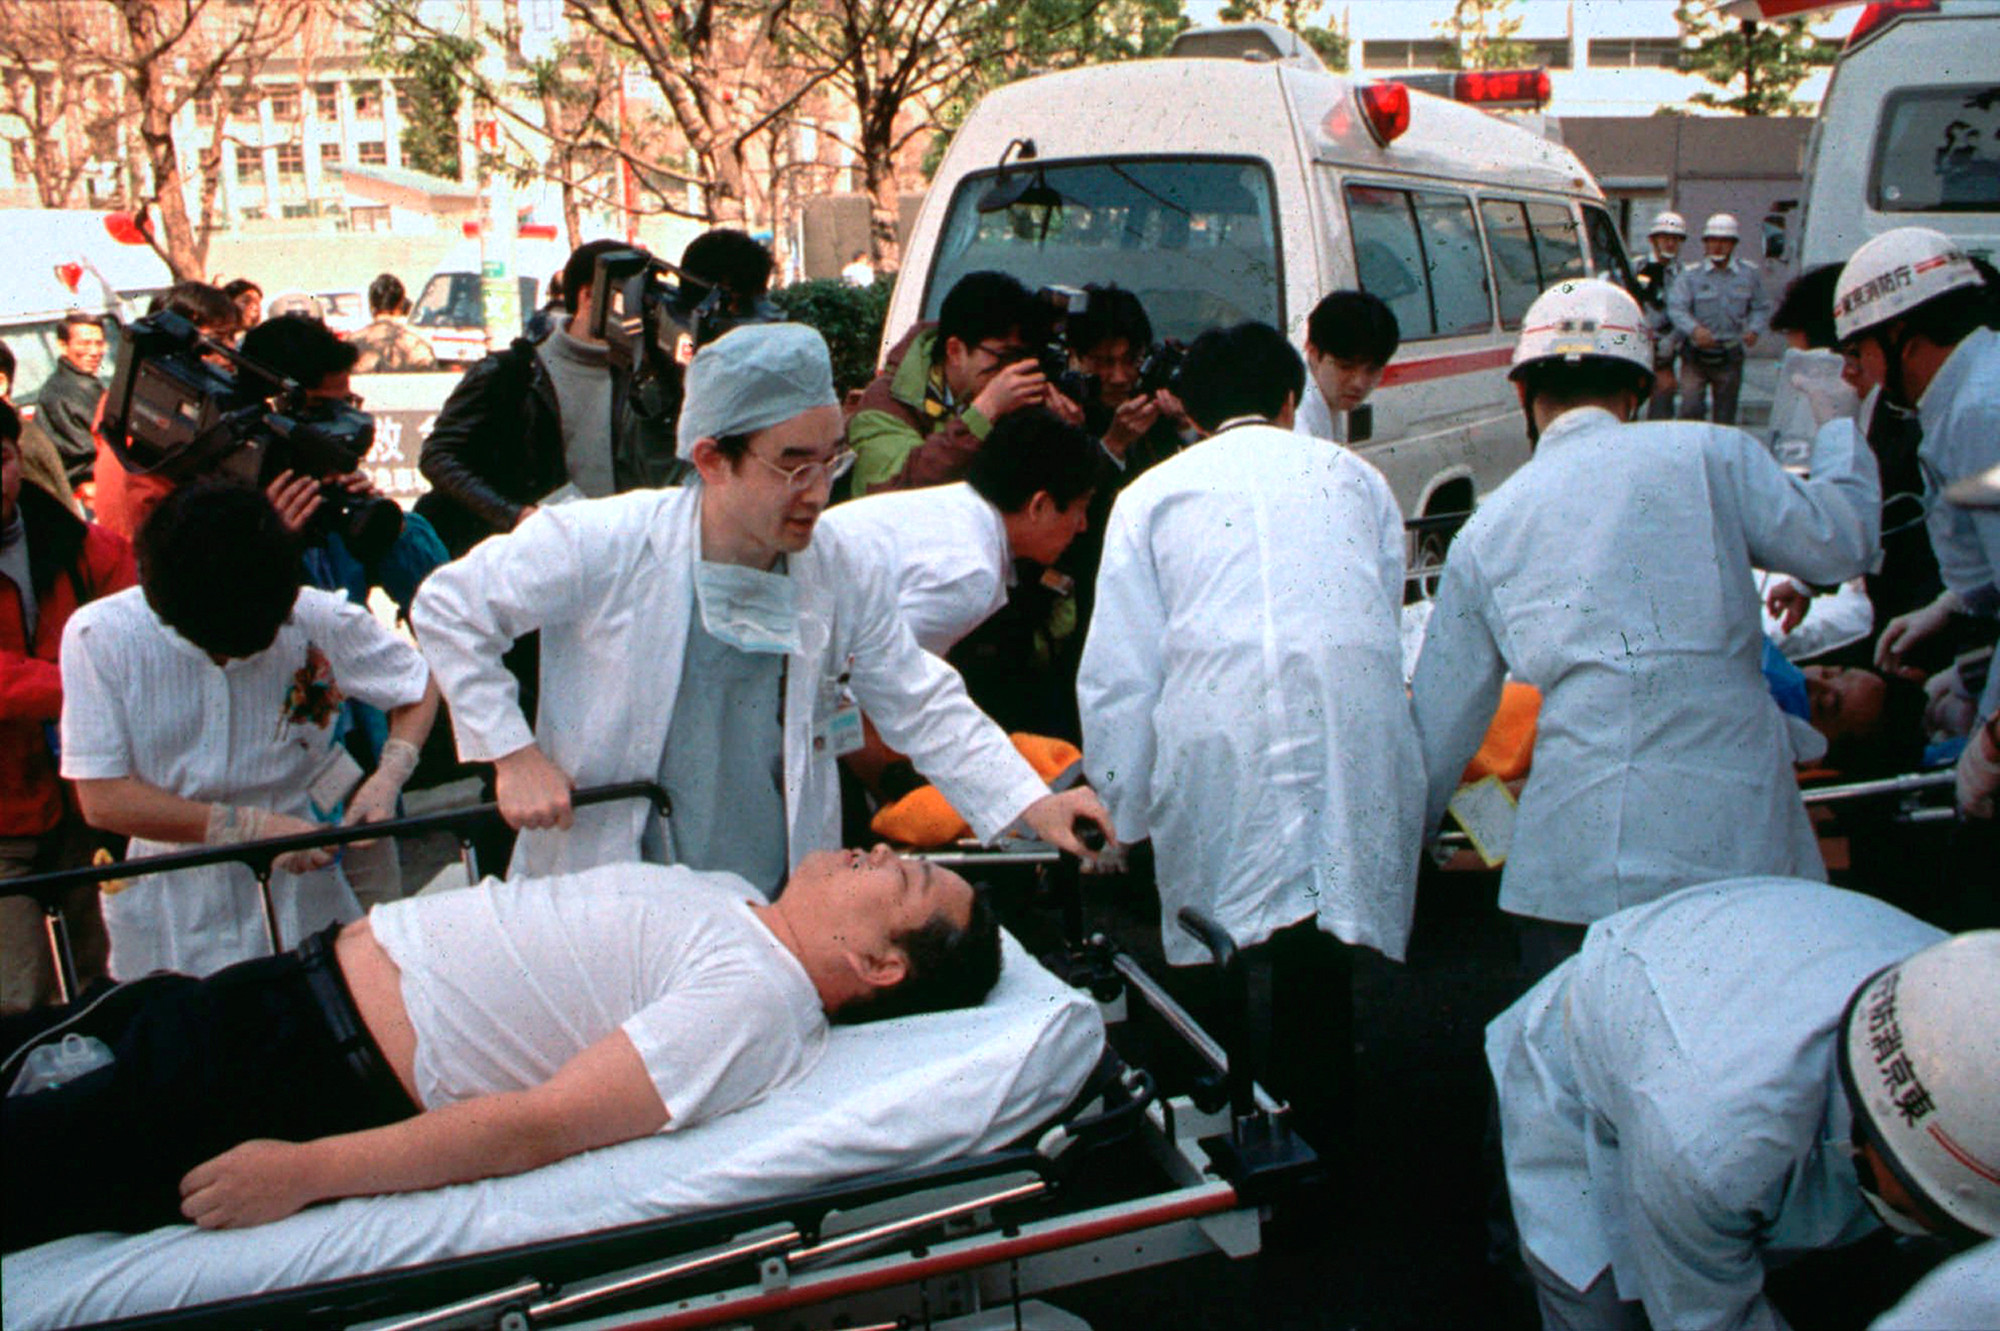 20 марта 1995 года, пассажиры метро, ​​пострадавшие от зарина — нервного газа — в центральных поездах метро Токио, отправляются в Международную больницу Св. Луки в Токио. Фото: © AP Photo / Chiaki Tsukumo